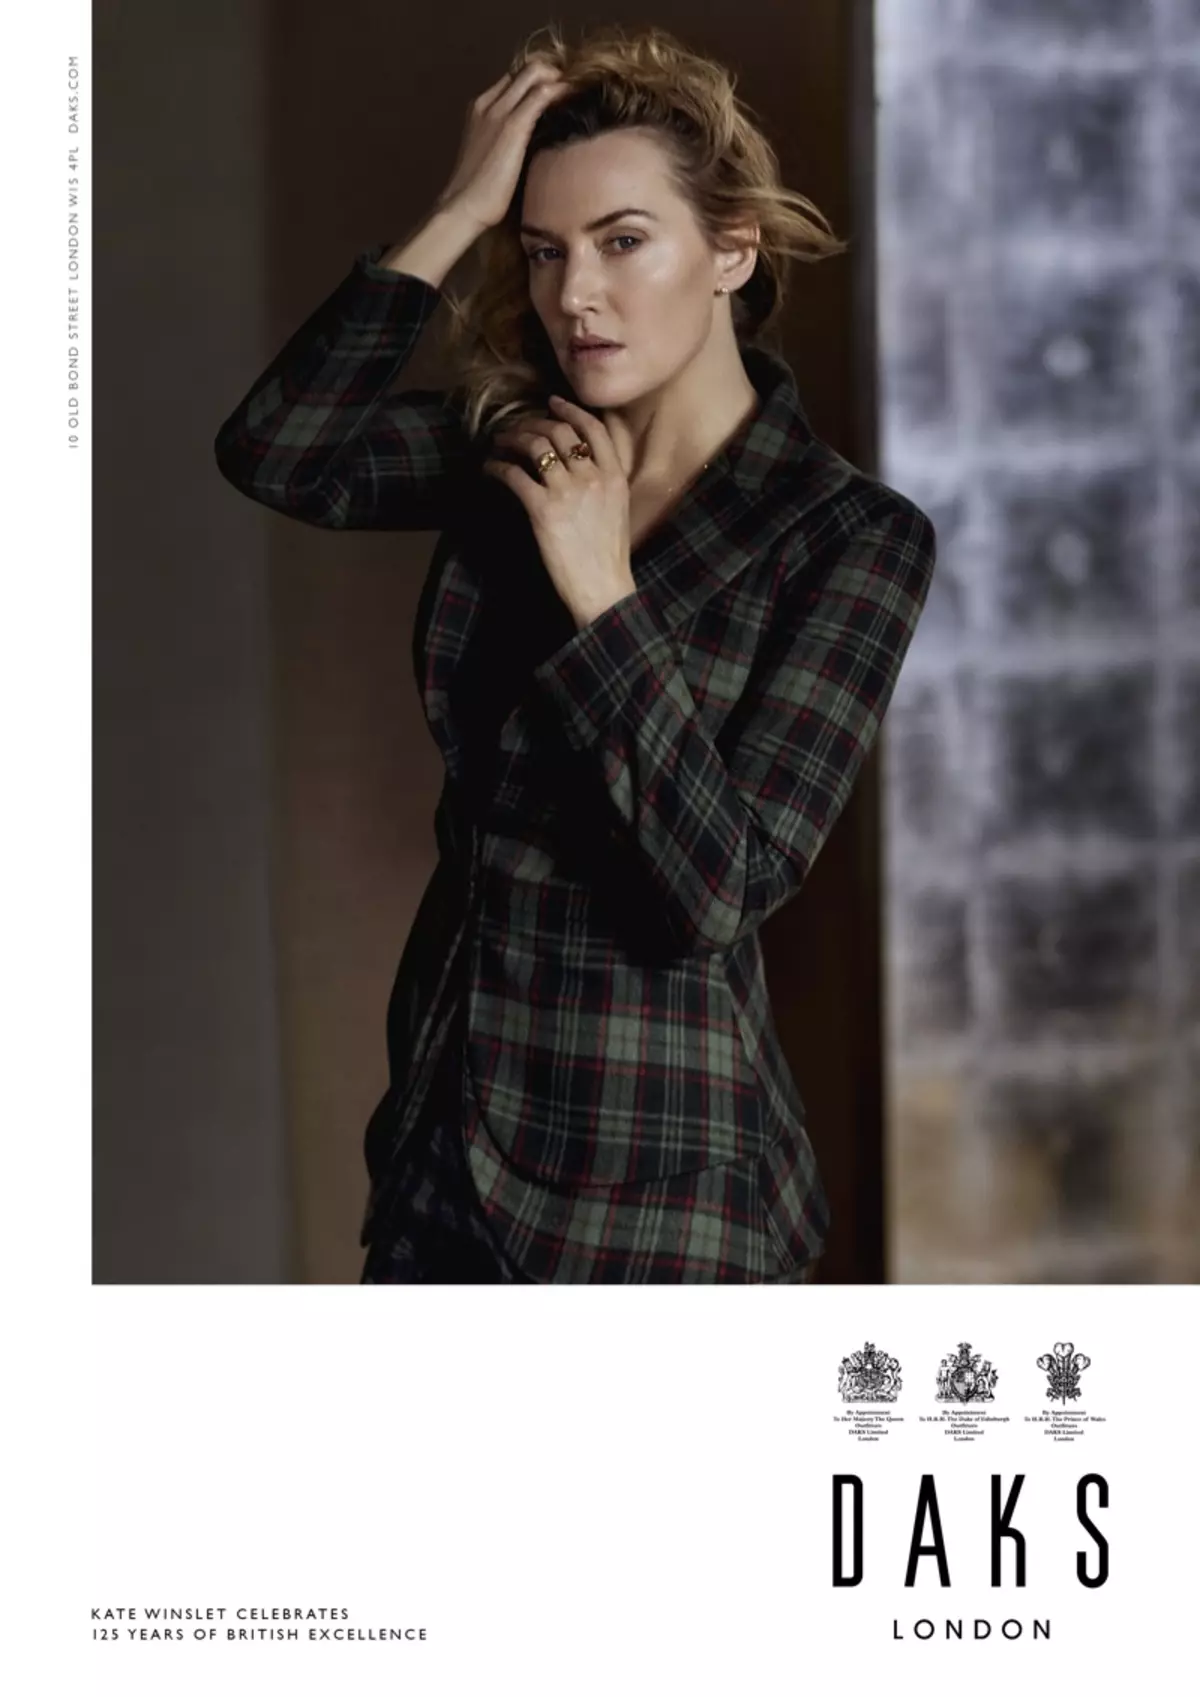 Brit elegancia: Kate Winslet Daksban Autumn-Winter 2019 hirdetési kampány 18903_3